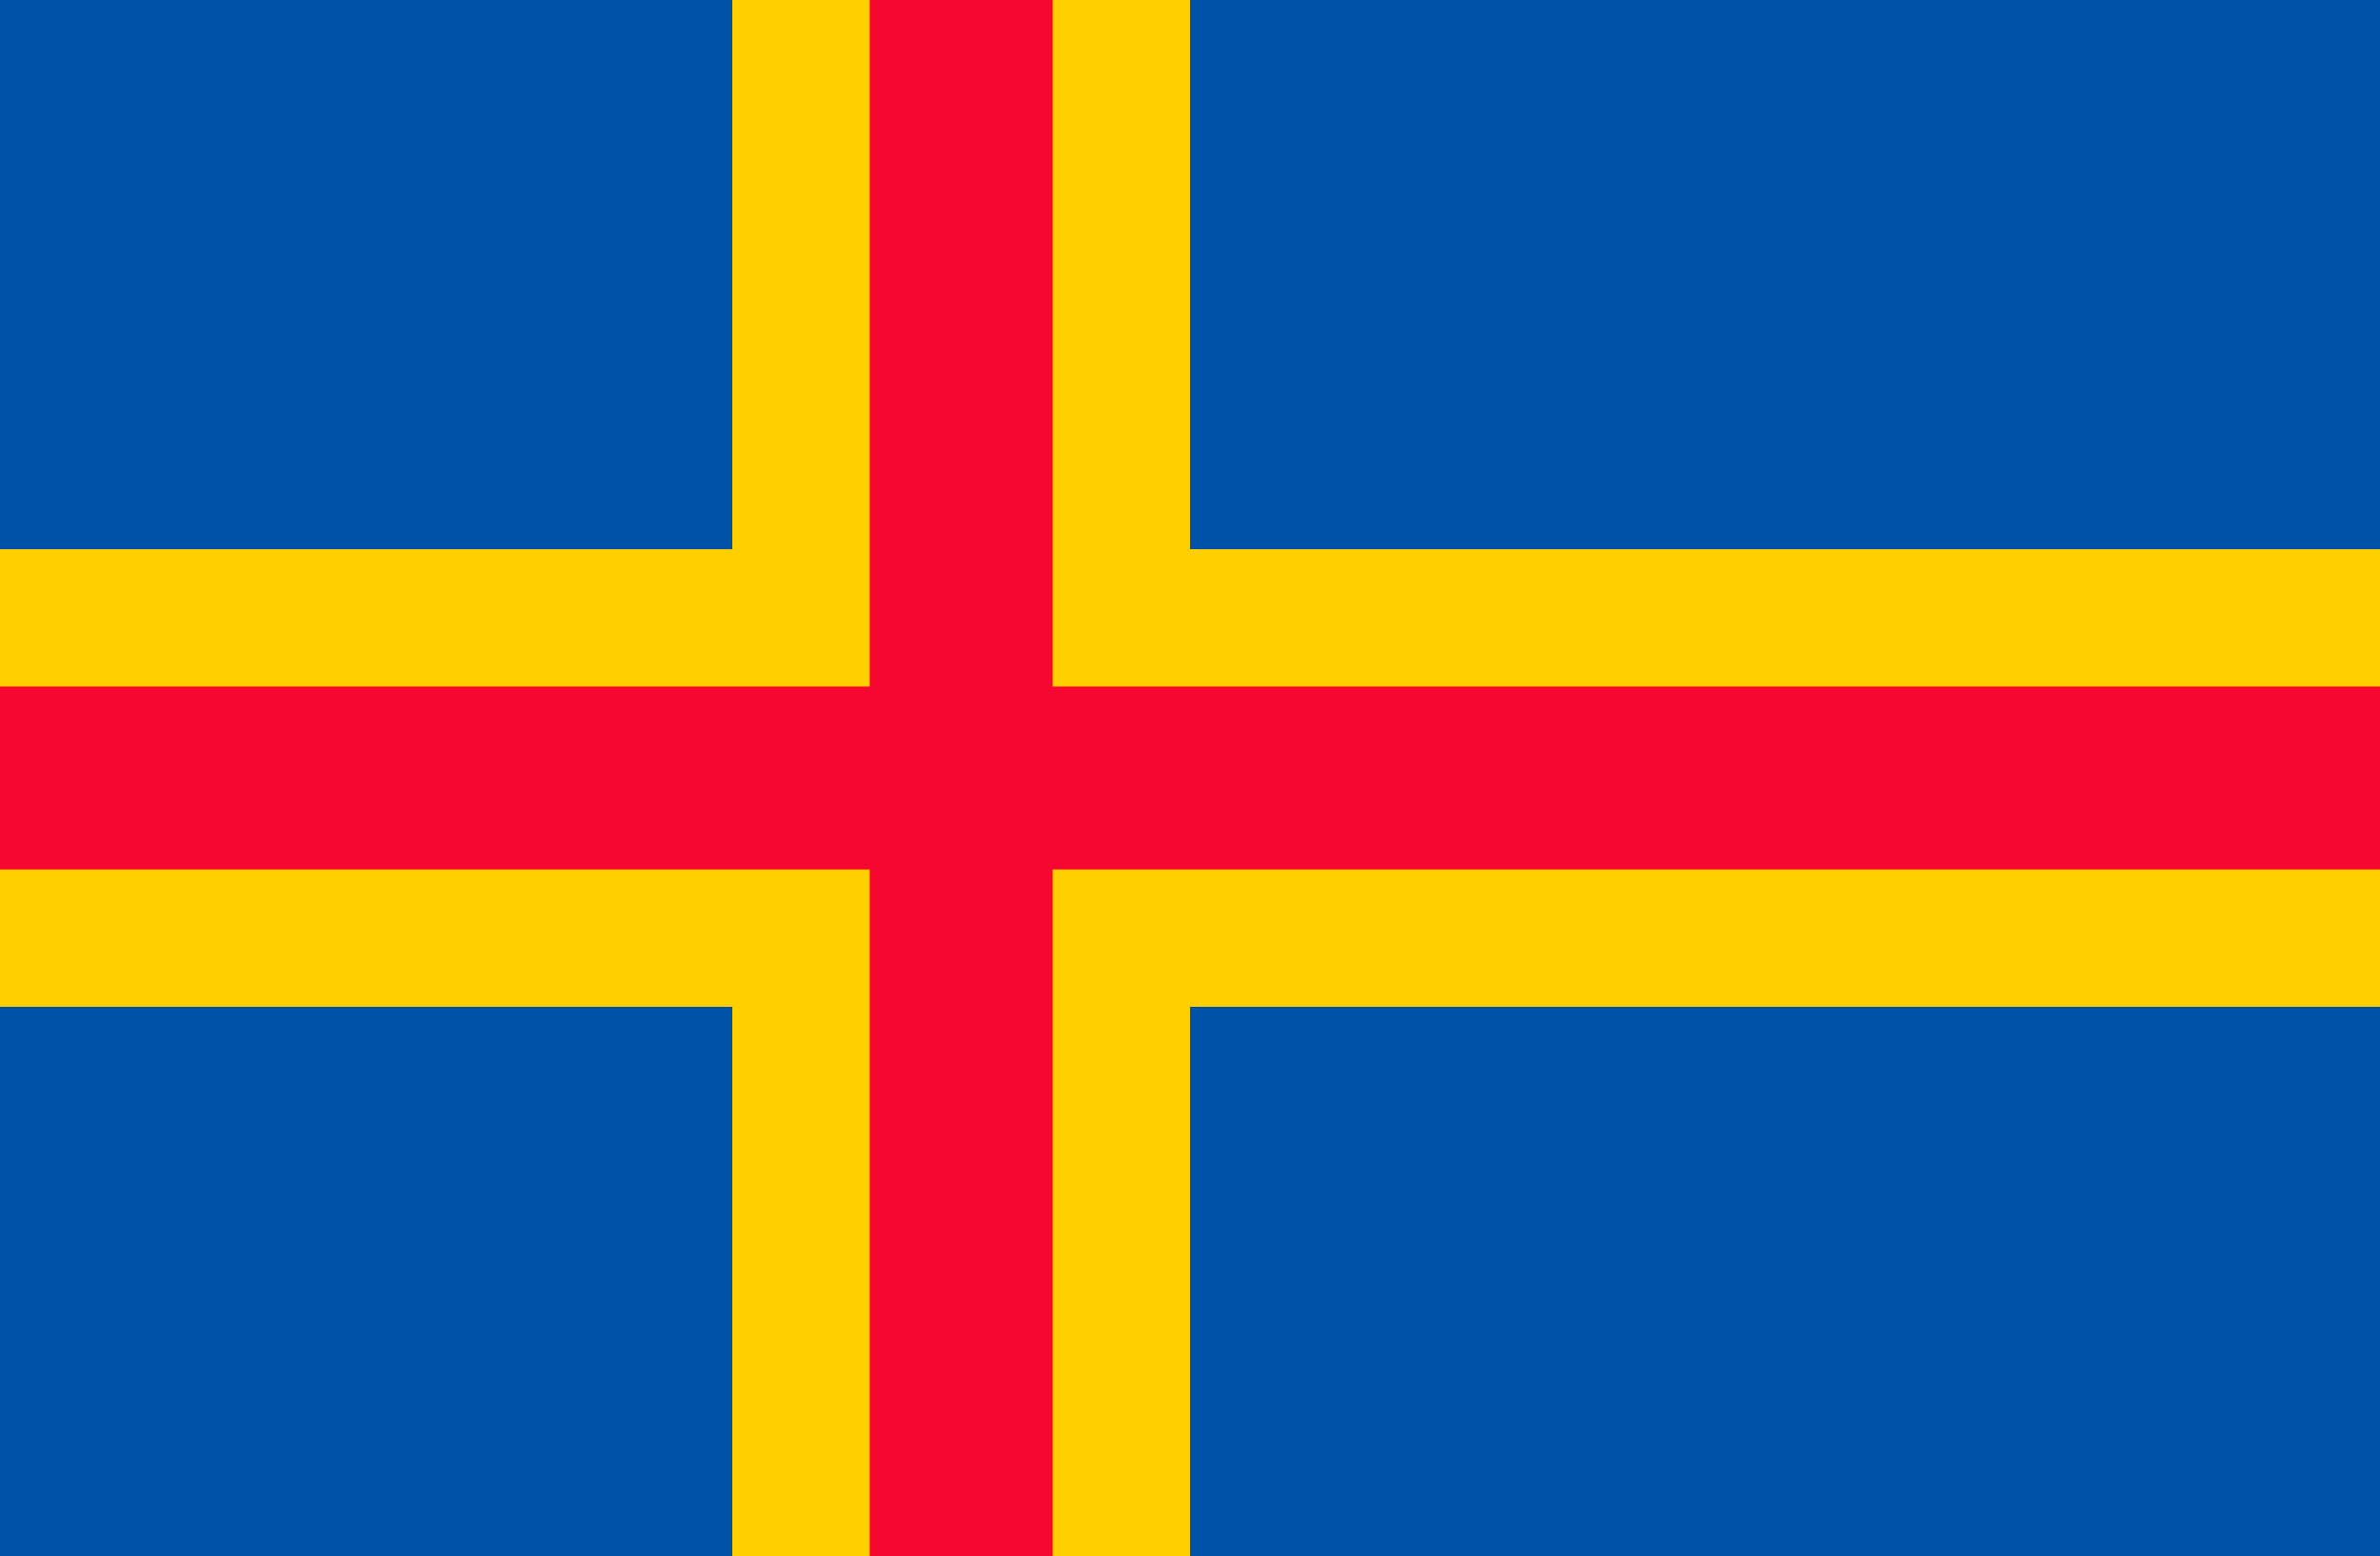 2470x1615 Flag of Ãland Islands (Finland) Photo Wallpapers in HD